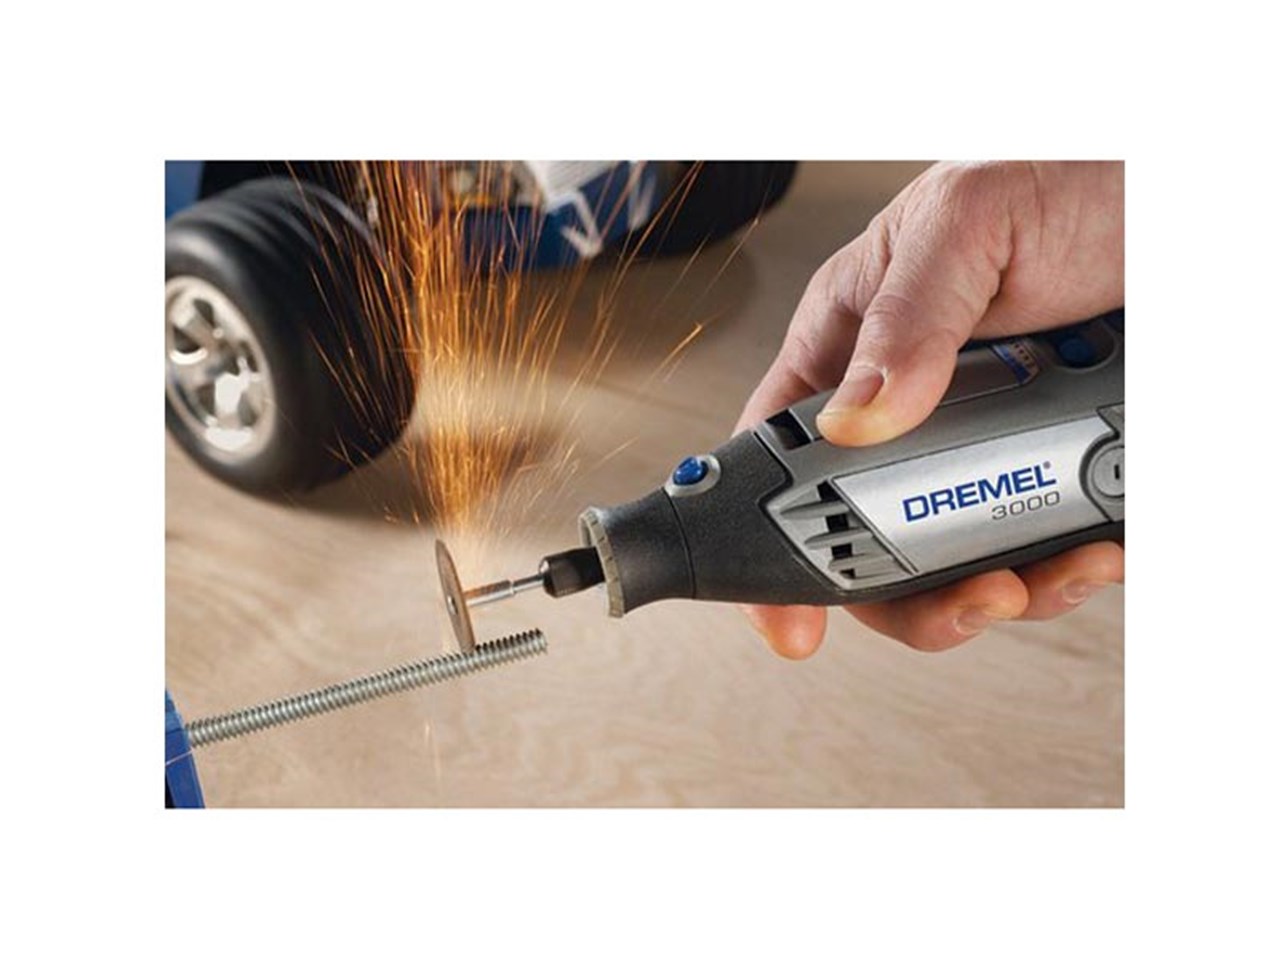 Dremel F0133000LE 230v Multi-tool Home Repair Project Kit